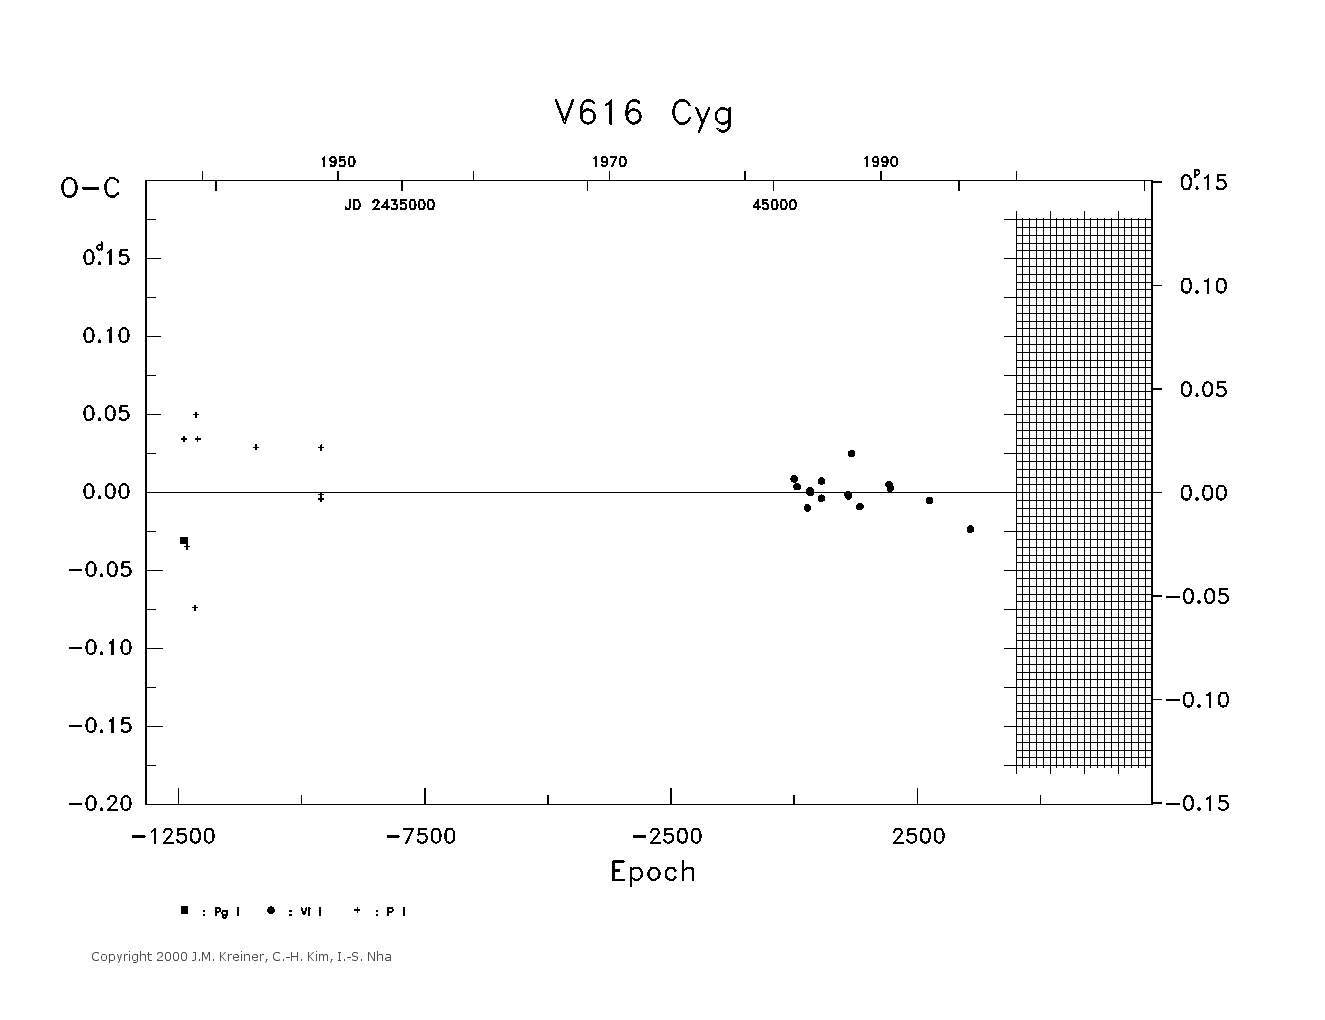 [IMAGE: large V616 CYG O-C diagram]